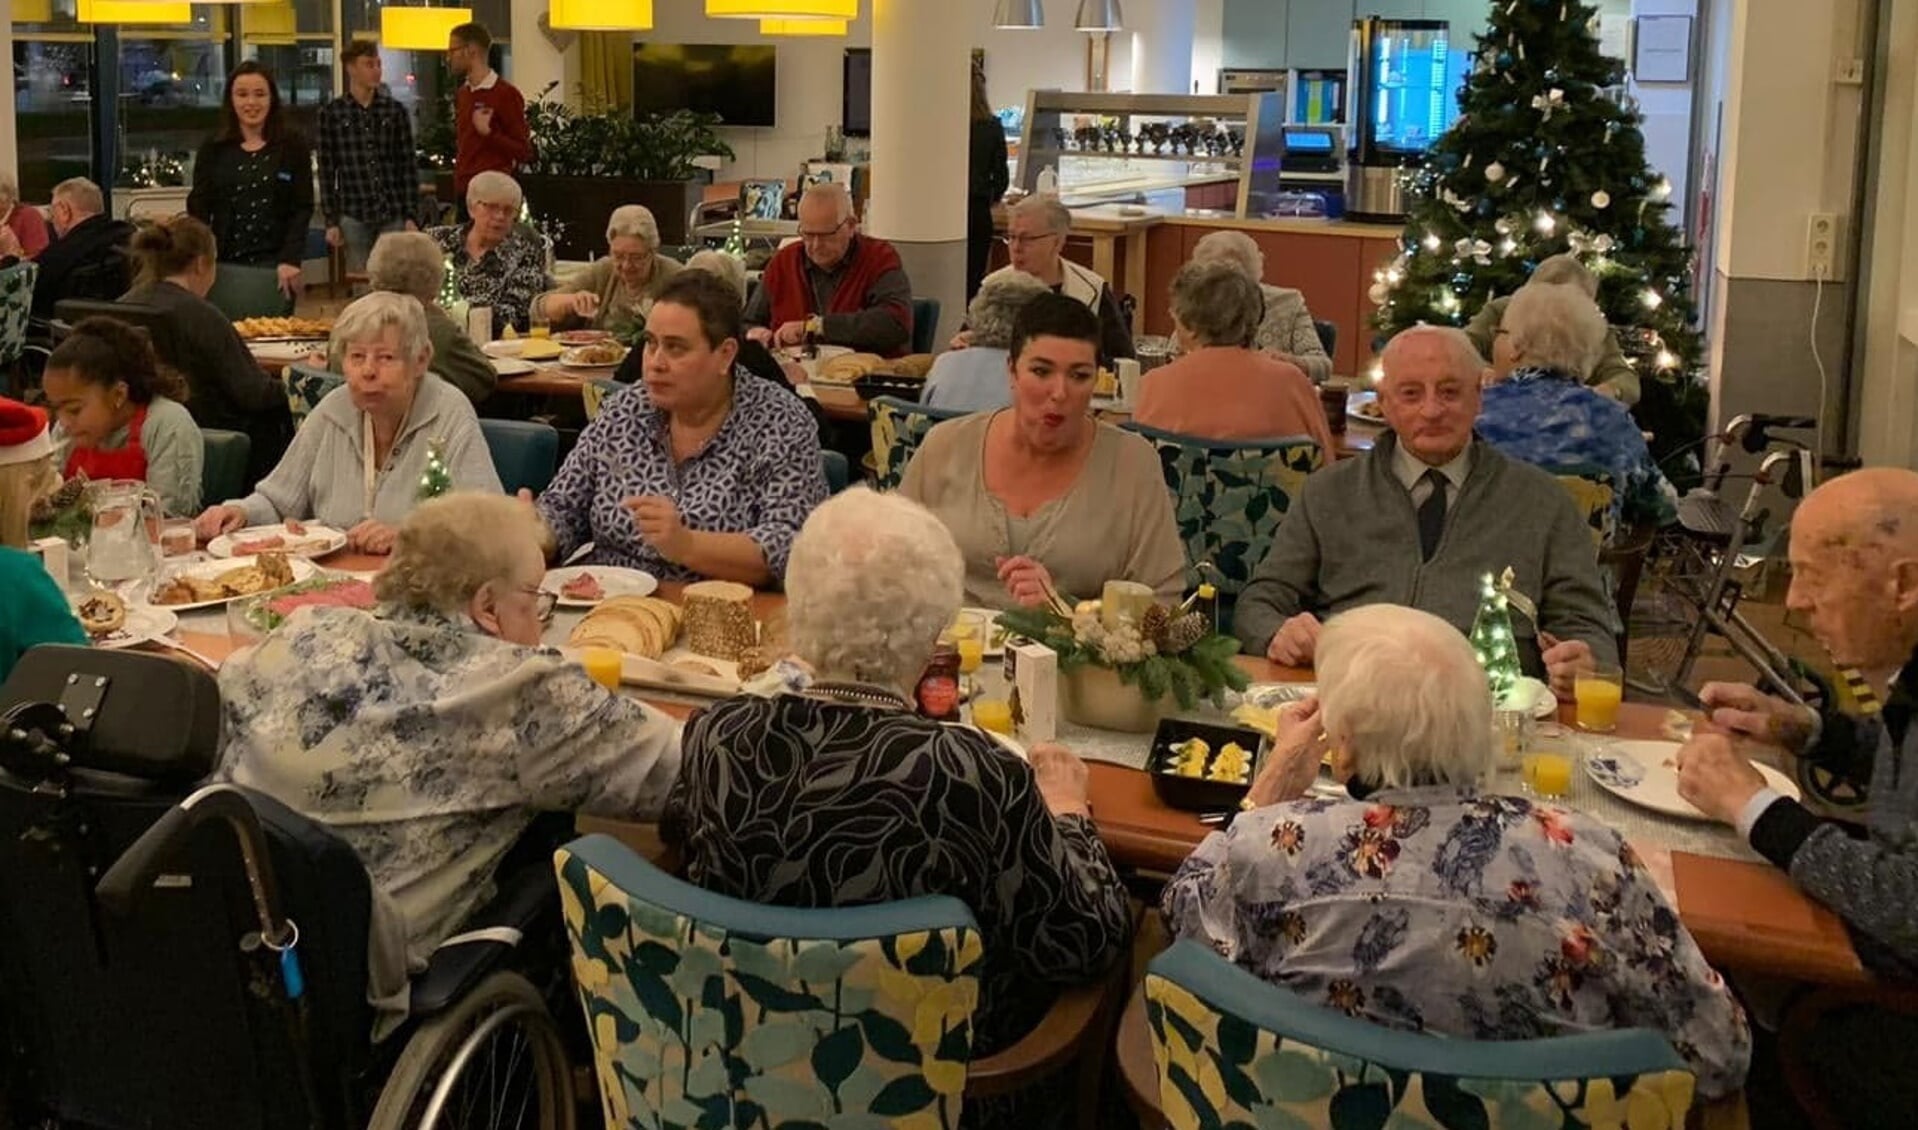 Waardse senioren genieten zichtbaar van het geheel verzorgde kerstdiner. (Foto: aangeleverd)